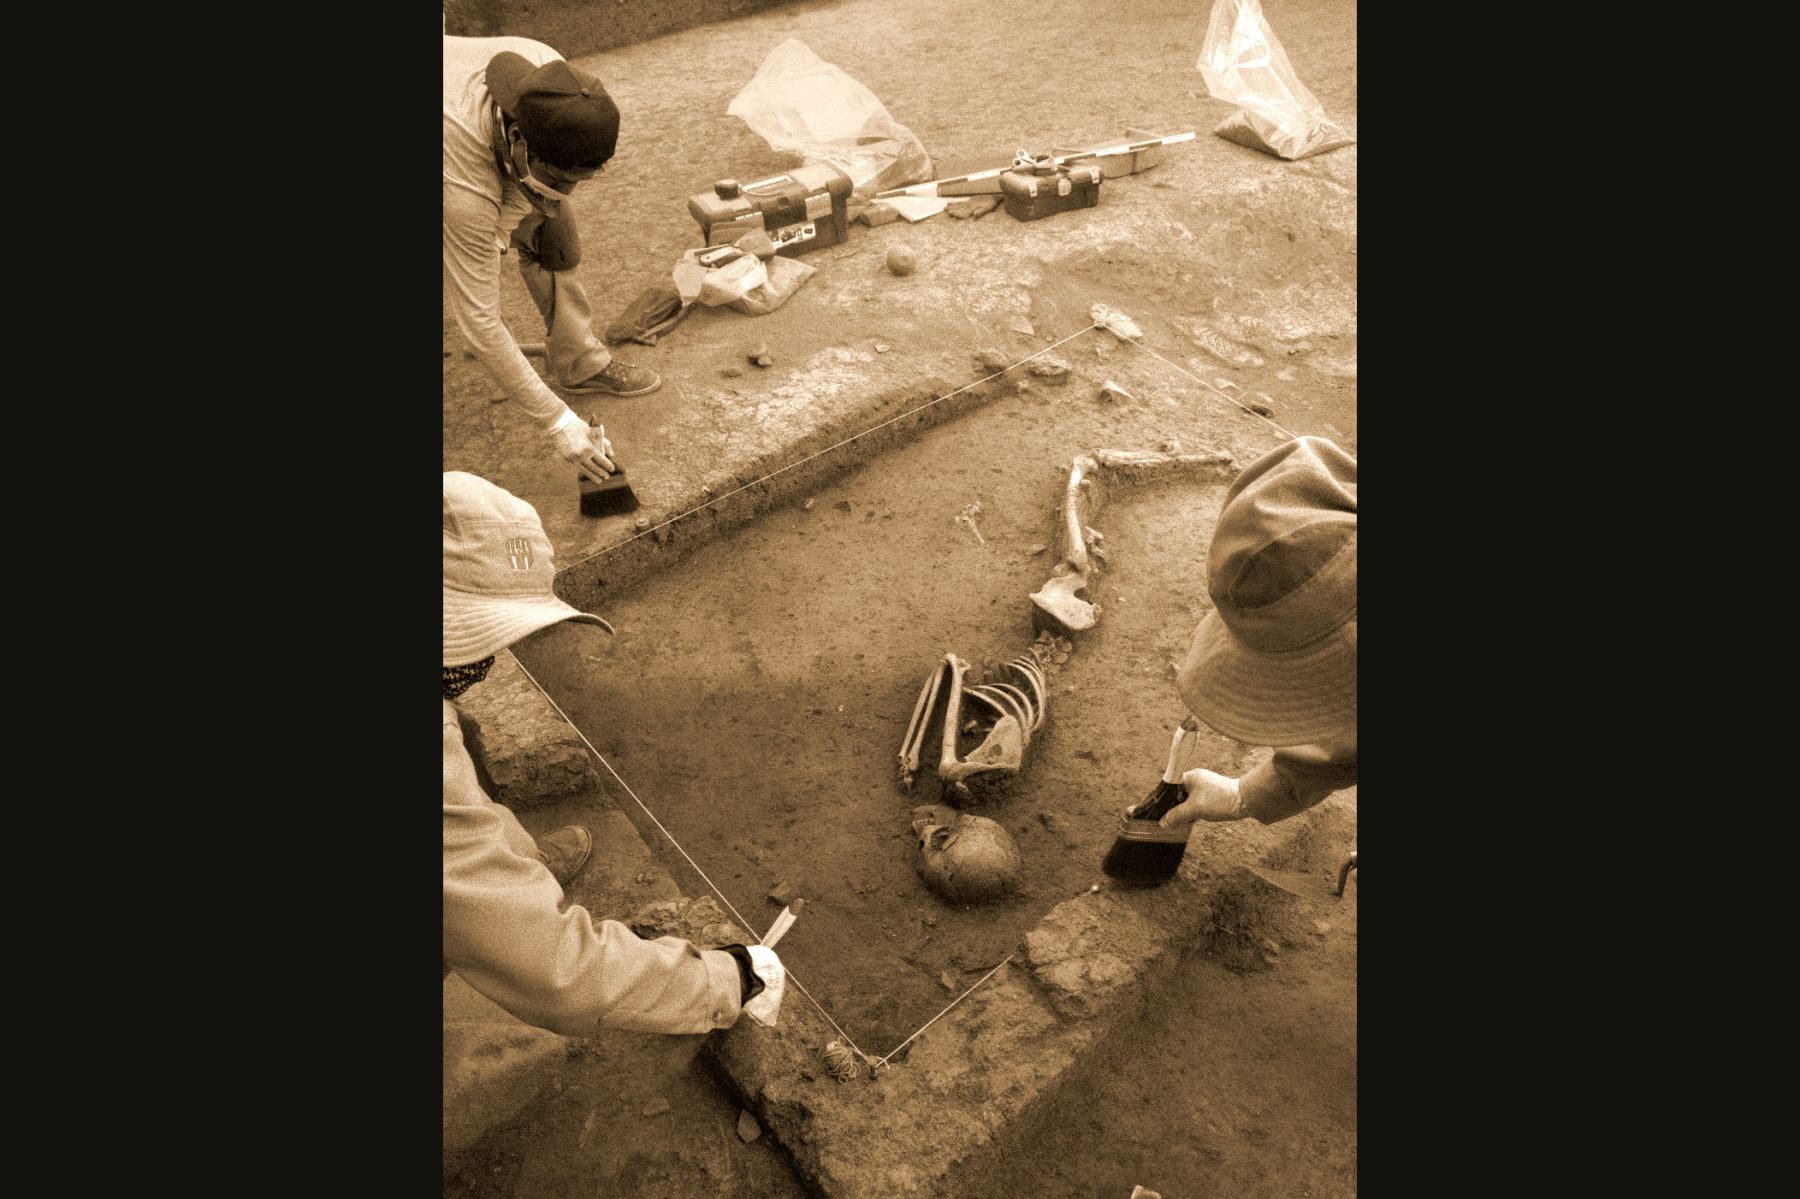 Dos entierros humanos que datan de hace 3 mil años fueron hallados recientemente por especialistas de la Dirección Desconcentrada de Cultura de Cusco (DDCC) en la zona arqueológica de Marcavalle, ubicado en el corazón de la ciudad del Cusco.
Foto: ANDINA/Percy Hurtado Santillán